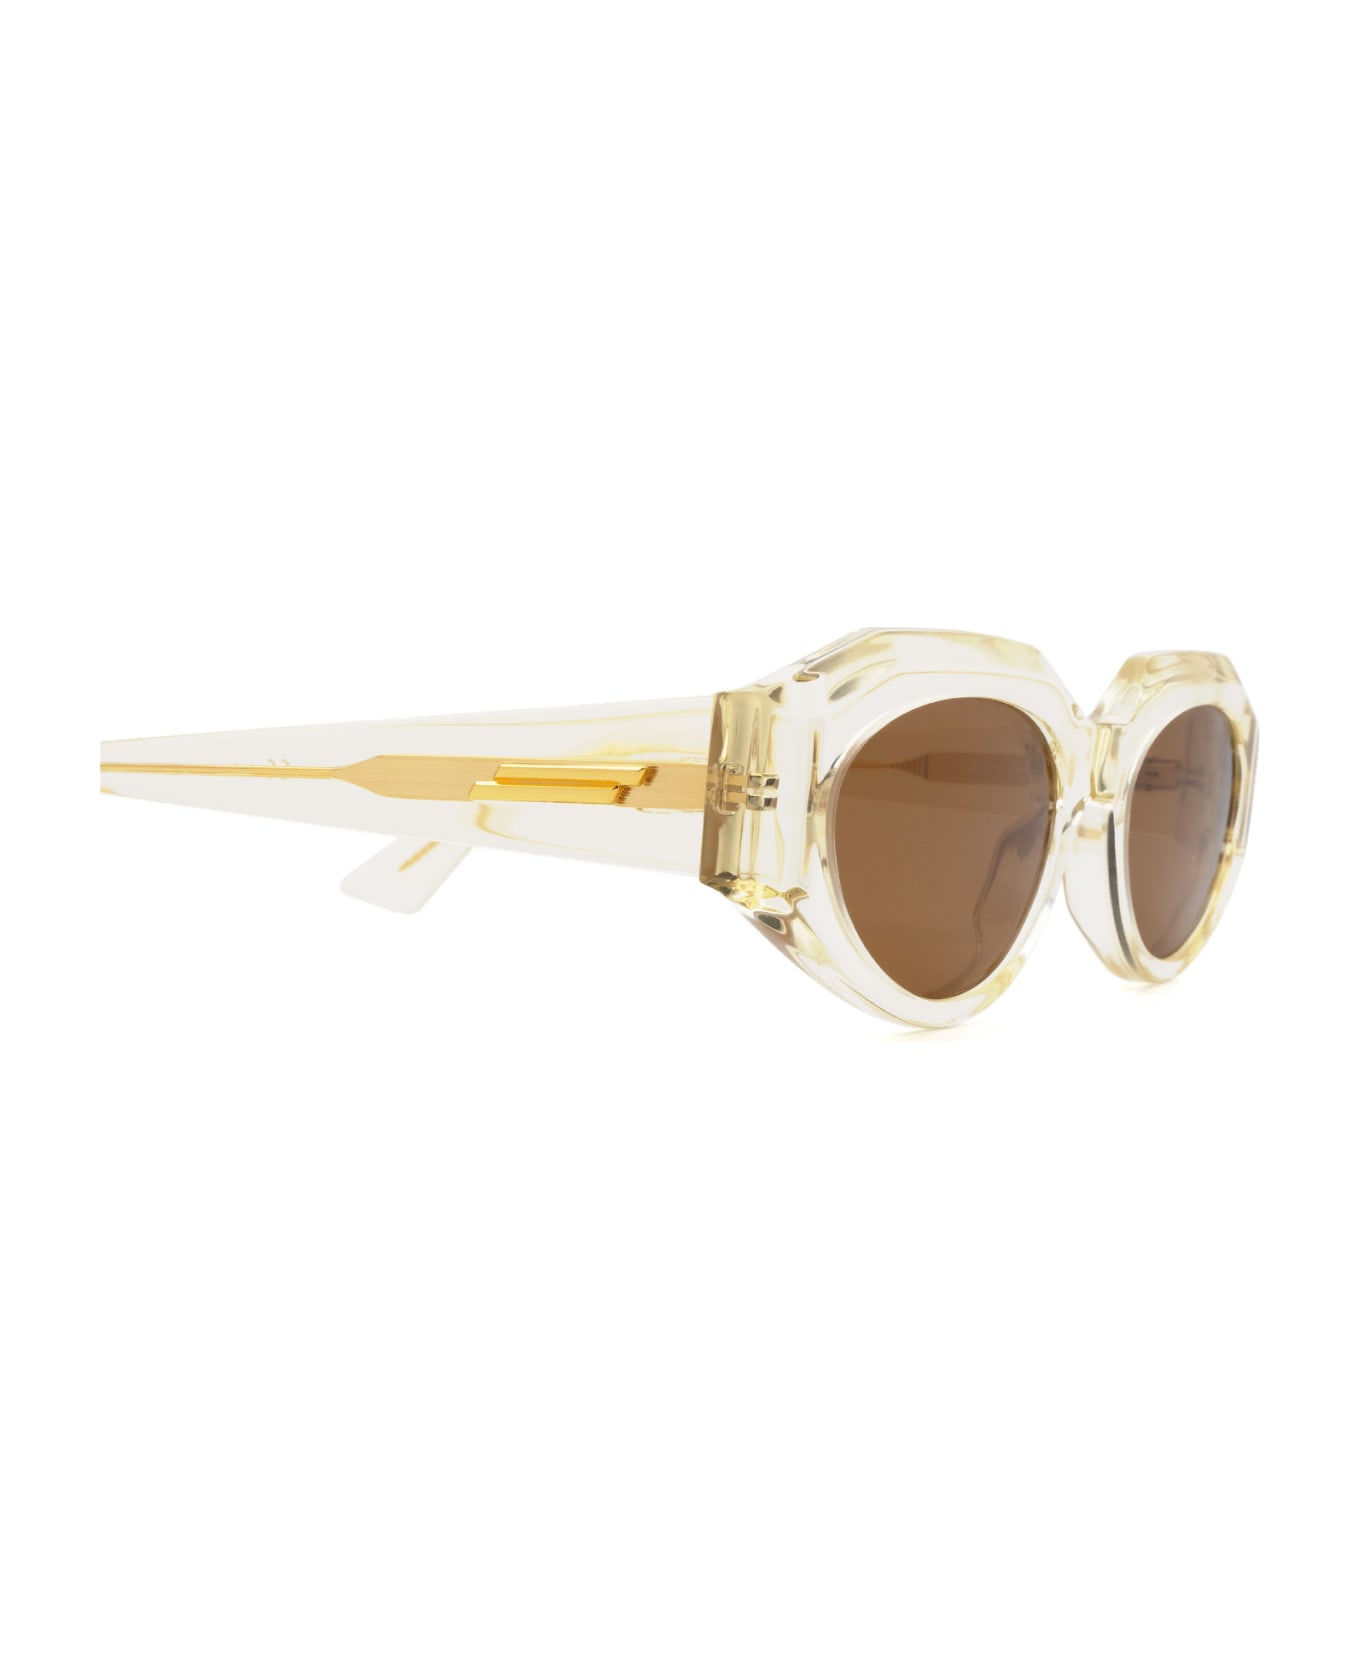 Bottega Veneta Eyewear Bv1031s Beige Sunglasses - Beige